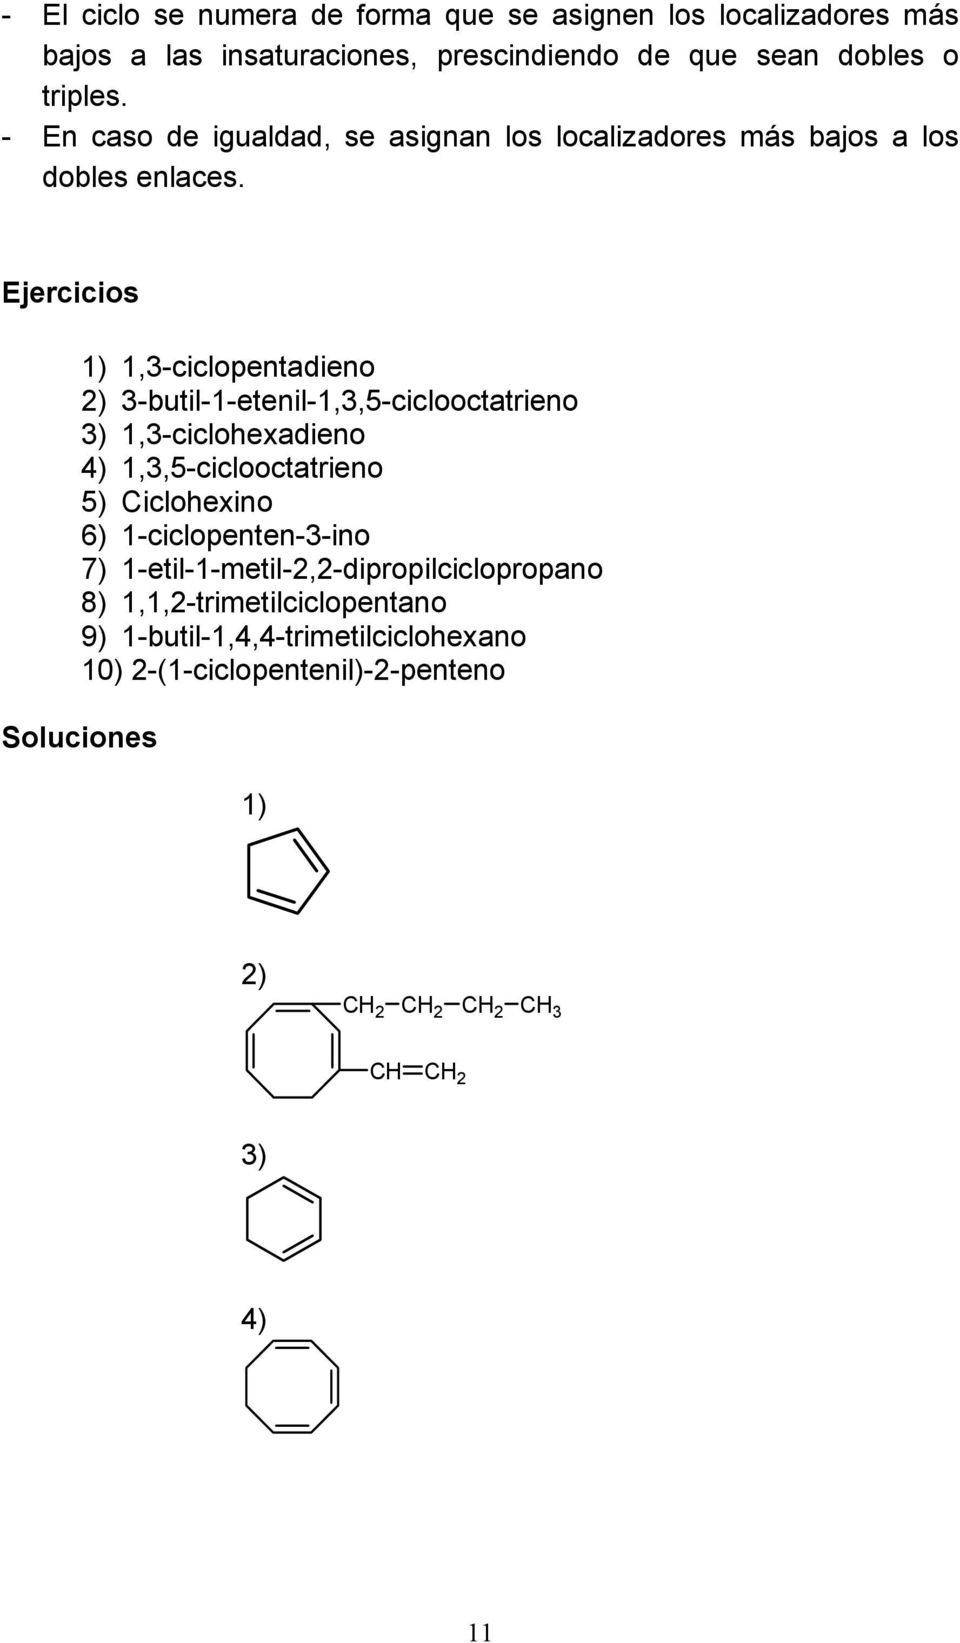 Ejercicios 1) 1,3-ciclopentadieno 2) 3-butil-1-etenil-1,3,5-ciclooctatrieno 3) 1,3-ciclohexadieno 4) 1,3,5-ciclooctatrieno 5) Ciclohexino